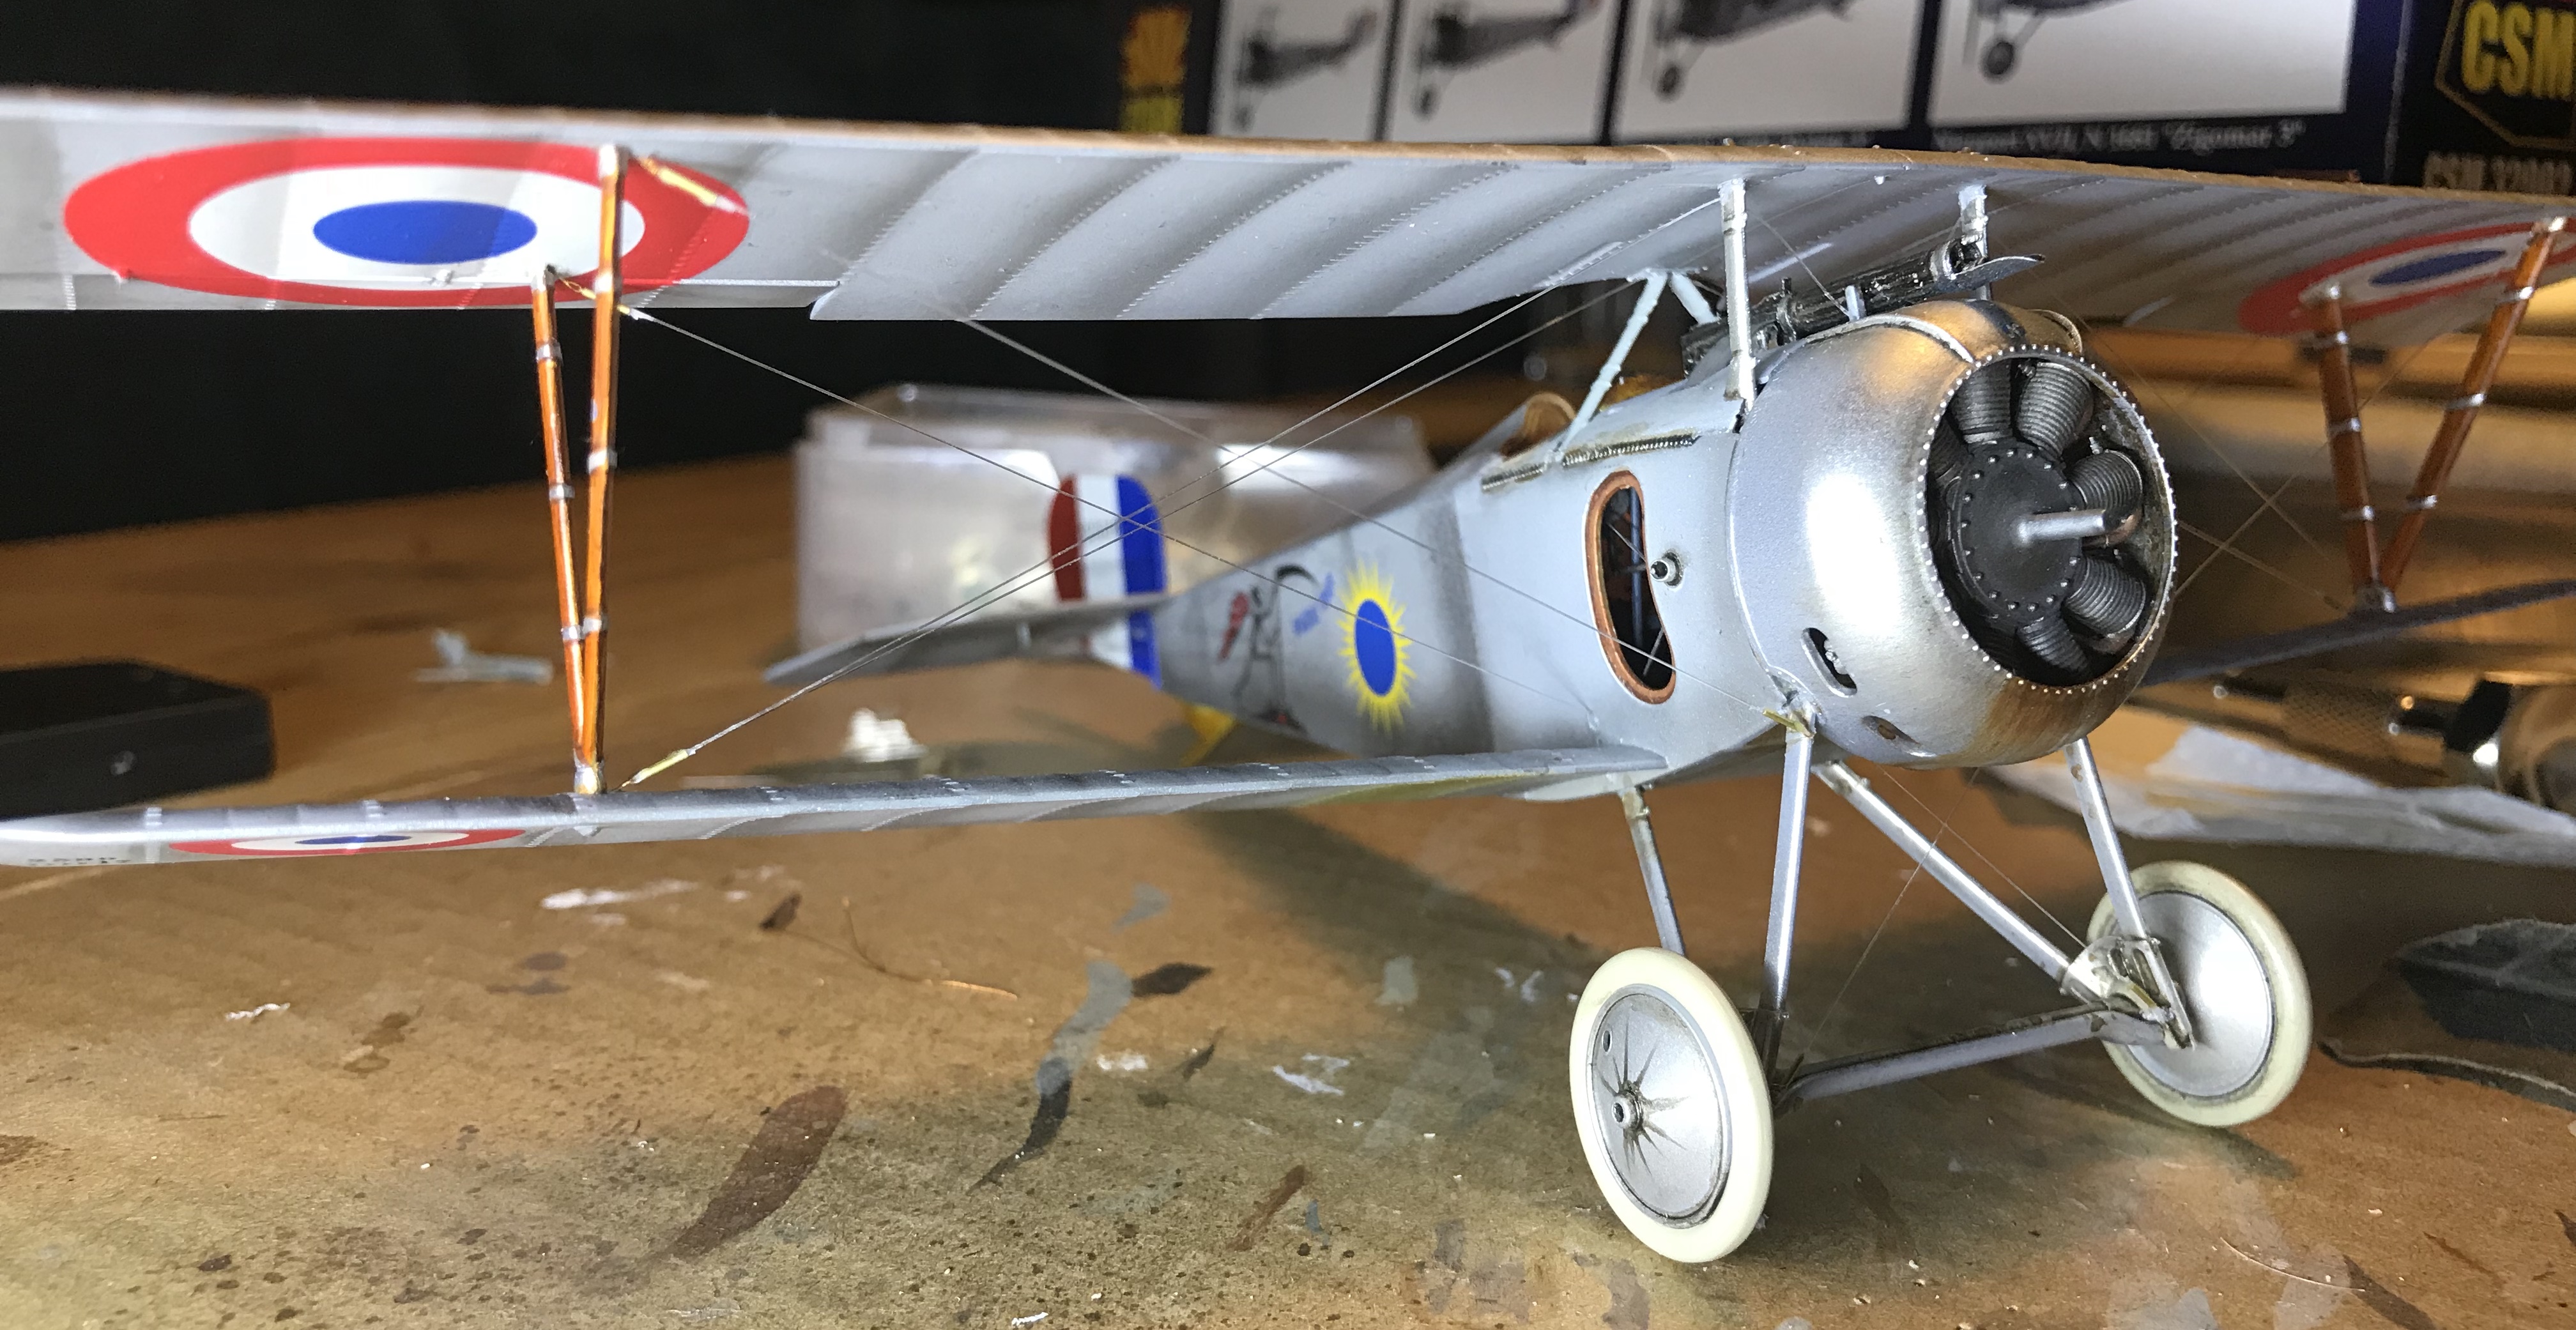 Nieuport 17, late version, 1:32, Copper State Models E792c30b-a5c2-4f4a-98bkq5